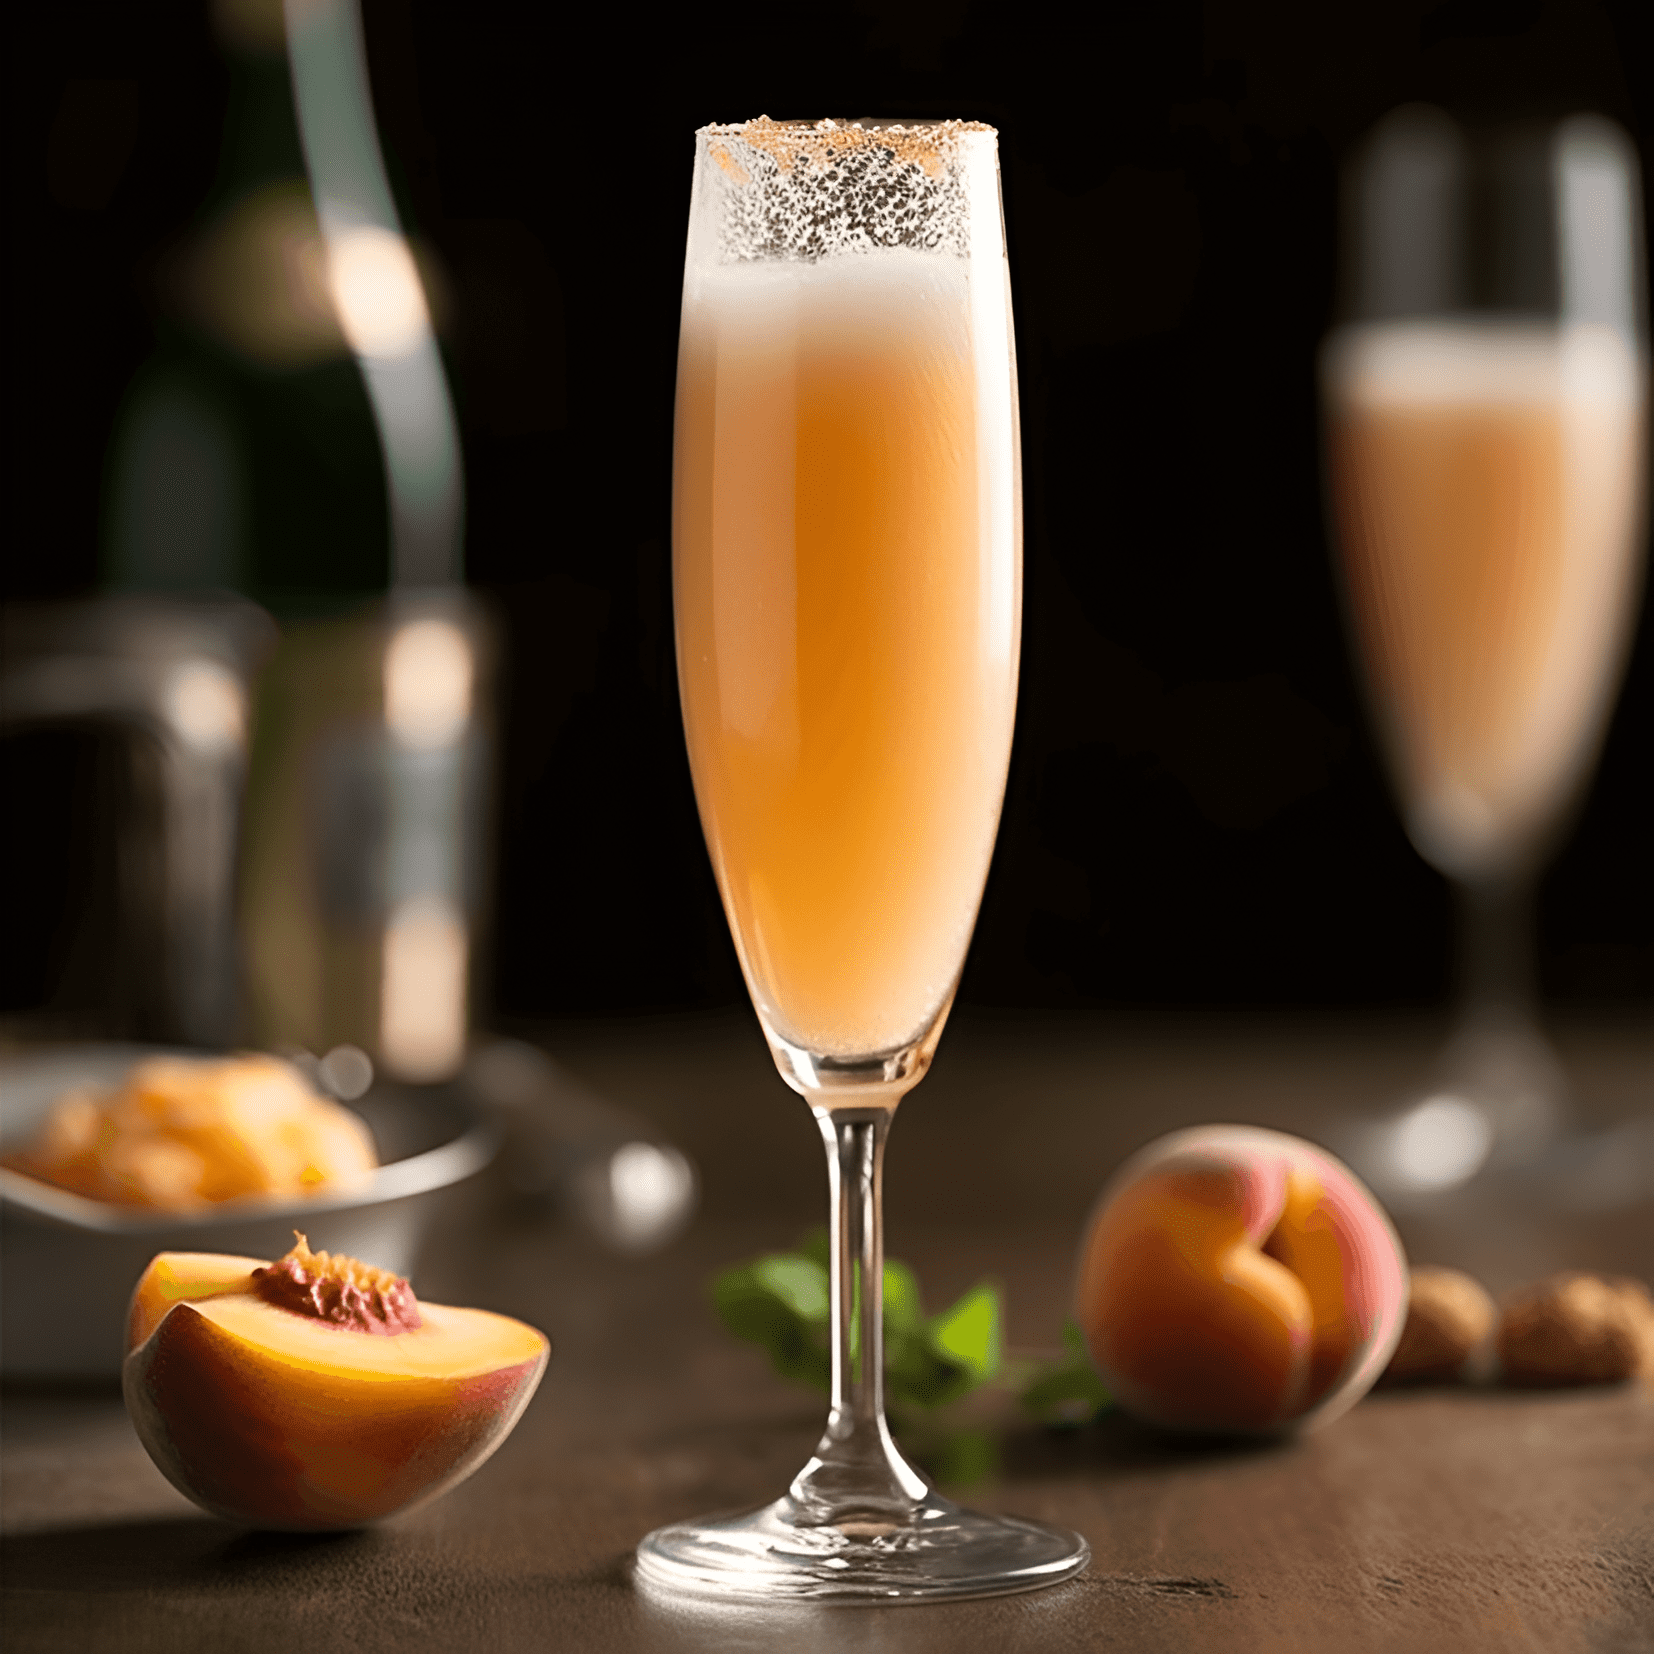 Peach Bellini Cóctel Receta - El Peach Bellini tiene un sabor refrescante, afrutado y ligeramente dulce. La combinación de puré de durazno y Prosecco crea una textura ligera, burbujeante y suave.